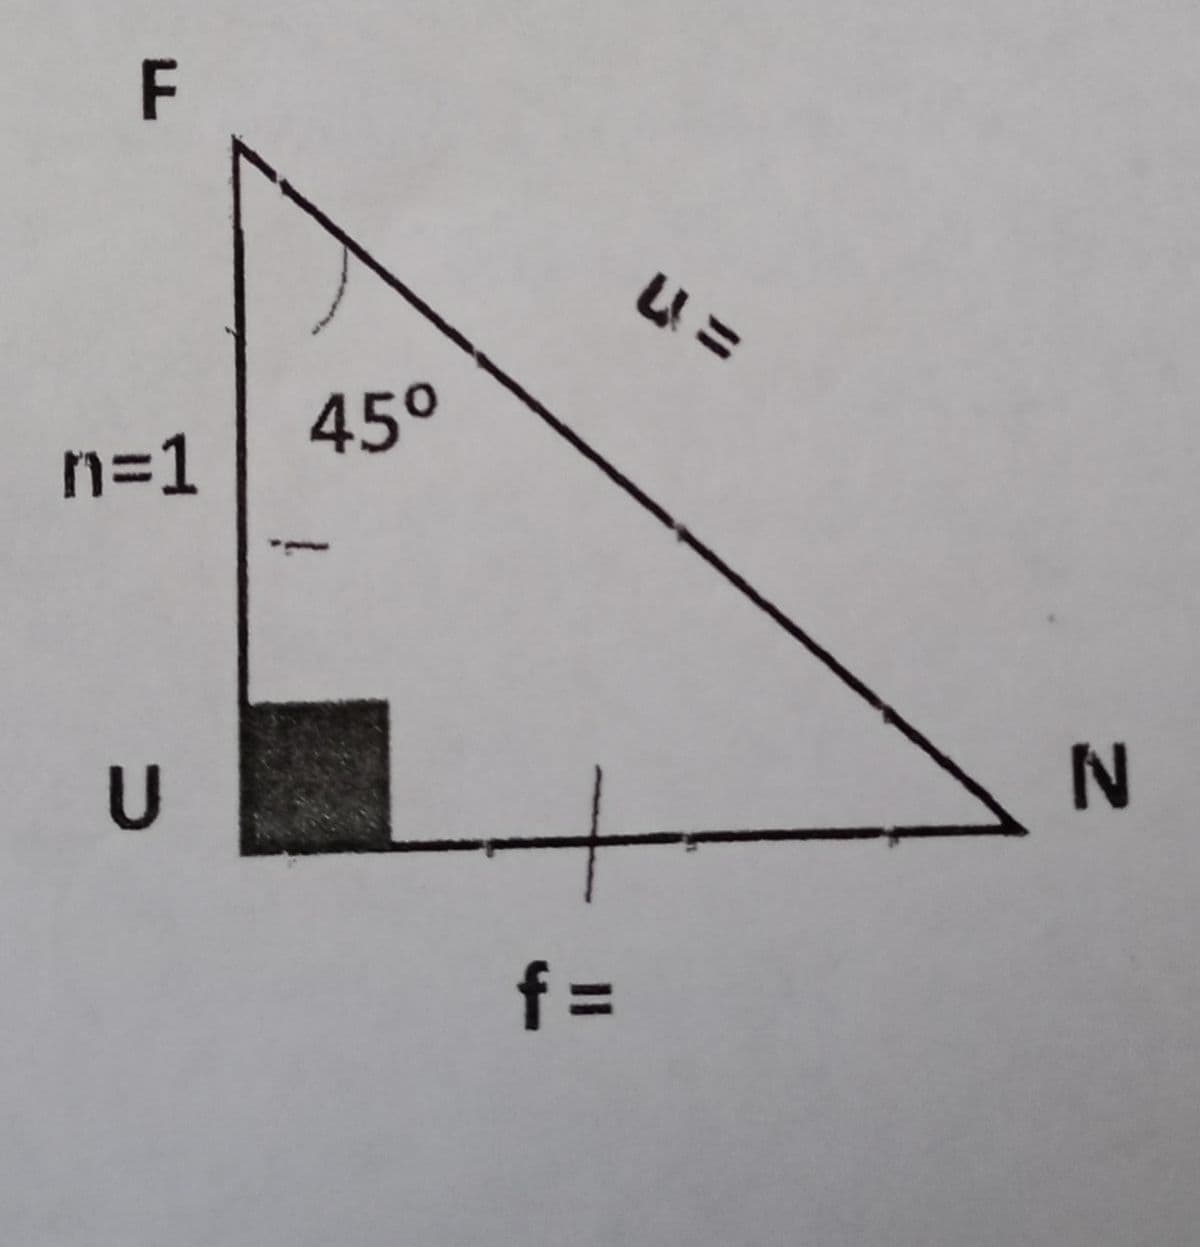 45°
n=1
f =
